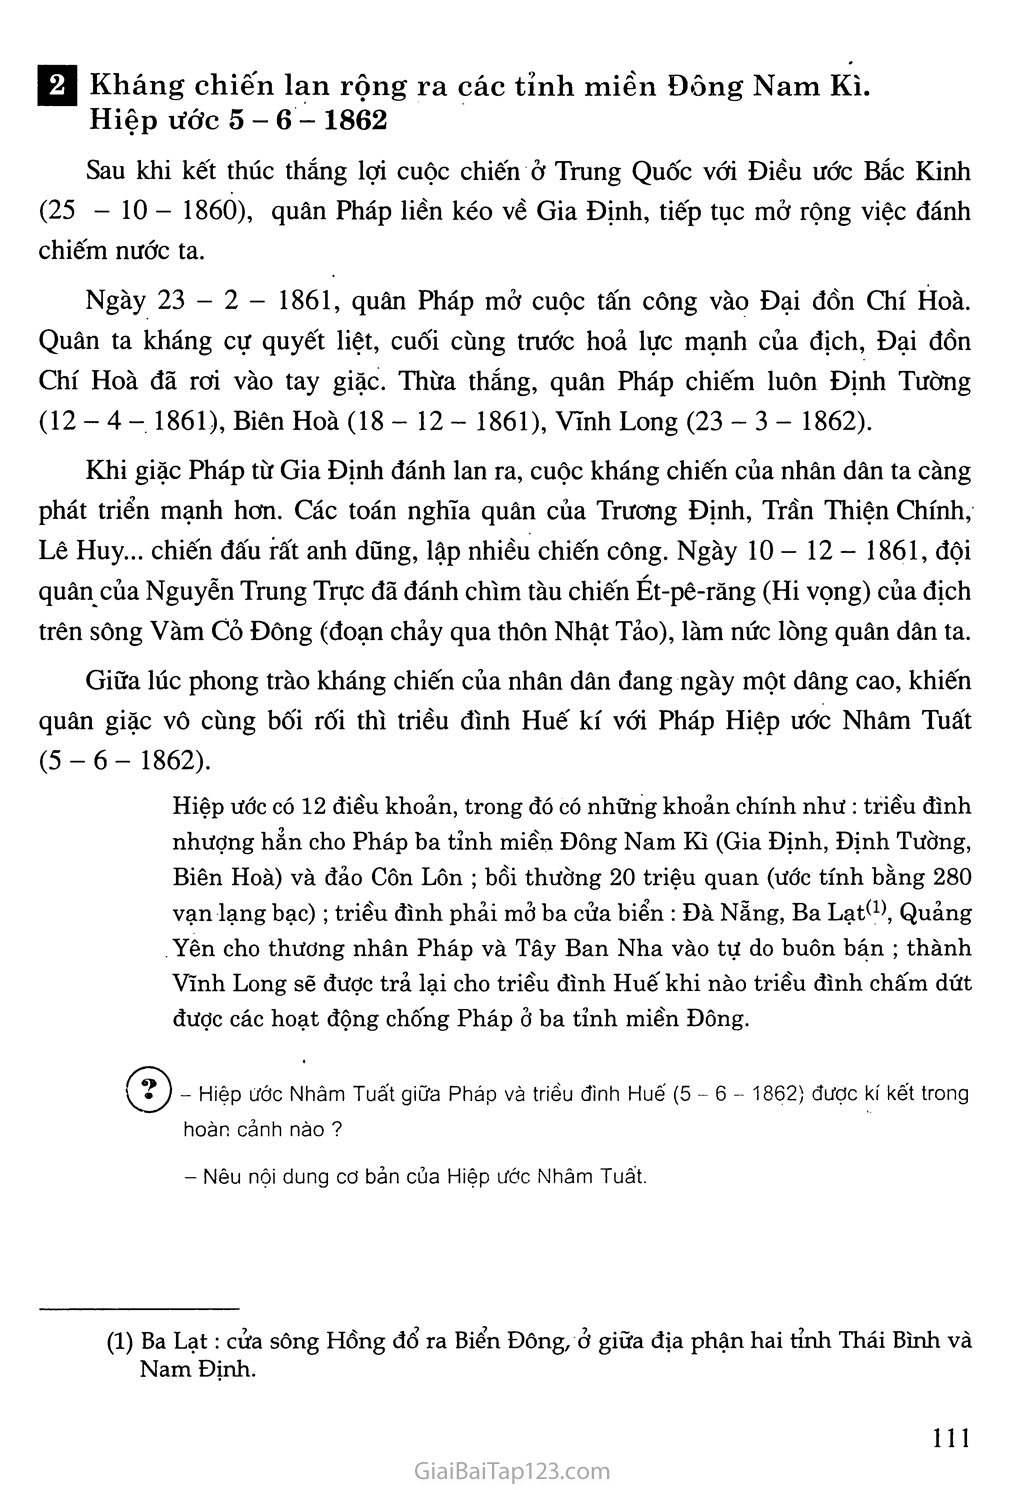 Bài 19. Nhân dân Việt Nam kháng chiến chống Pháp xâm lược (Từ năm 1858 đến trước năm 1873) trang 6